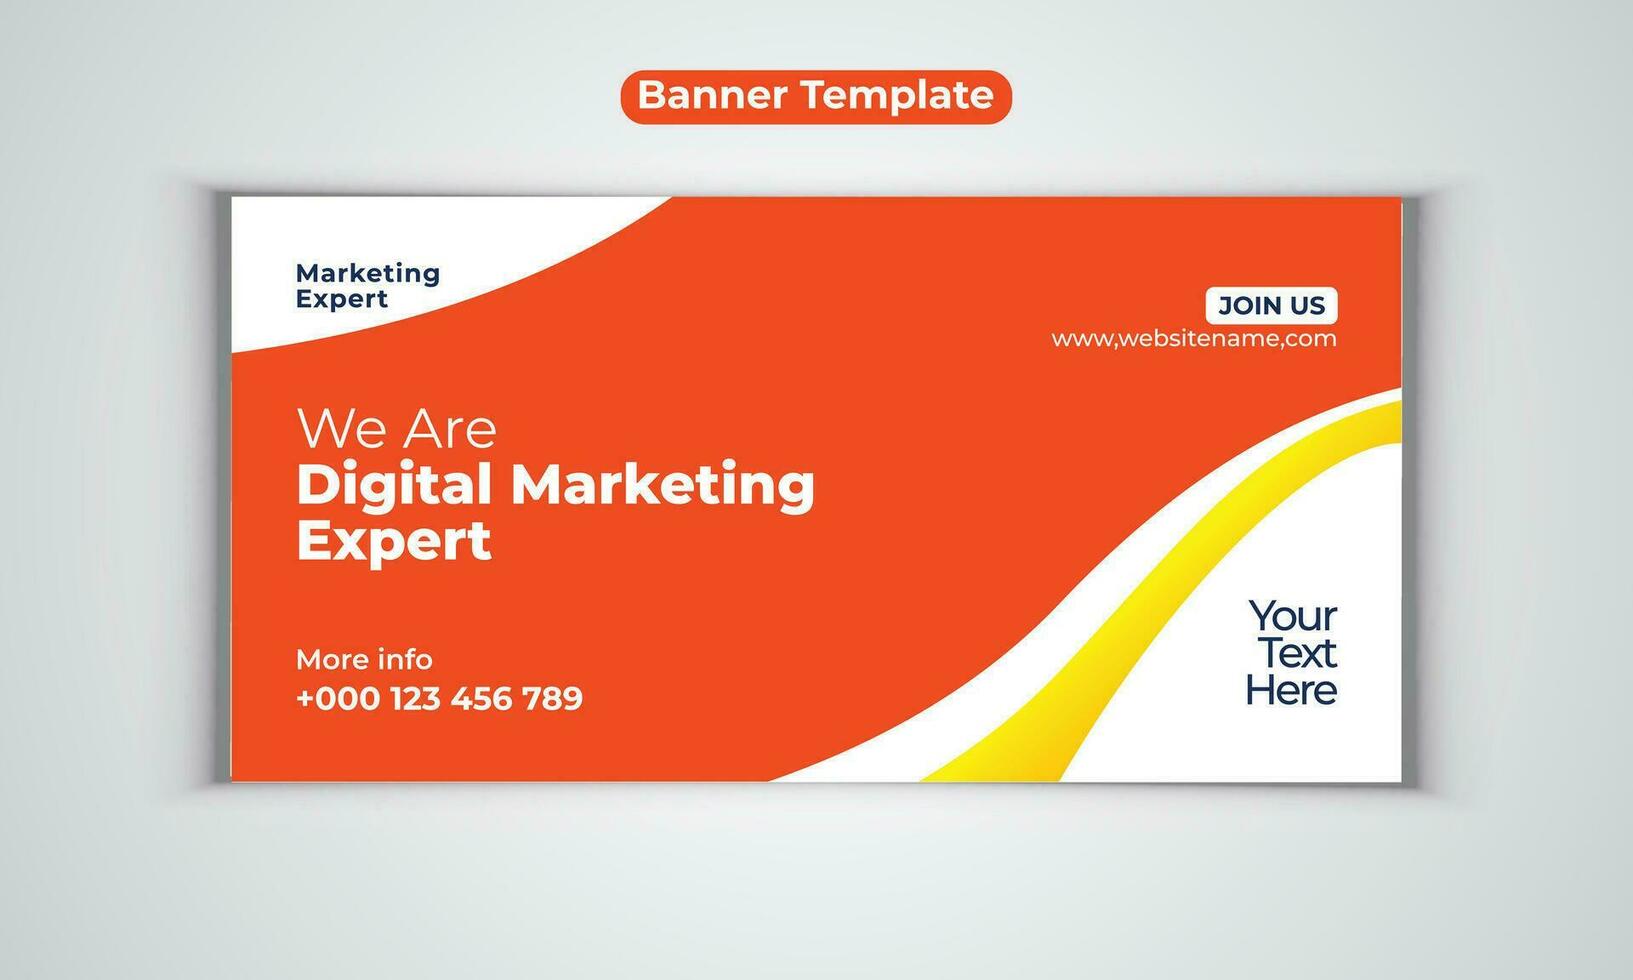 Digital Marketing Agentur modern Banner Design Vektor Vorlage